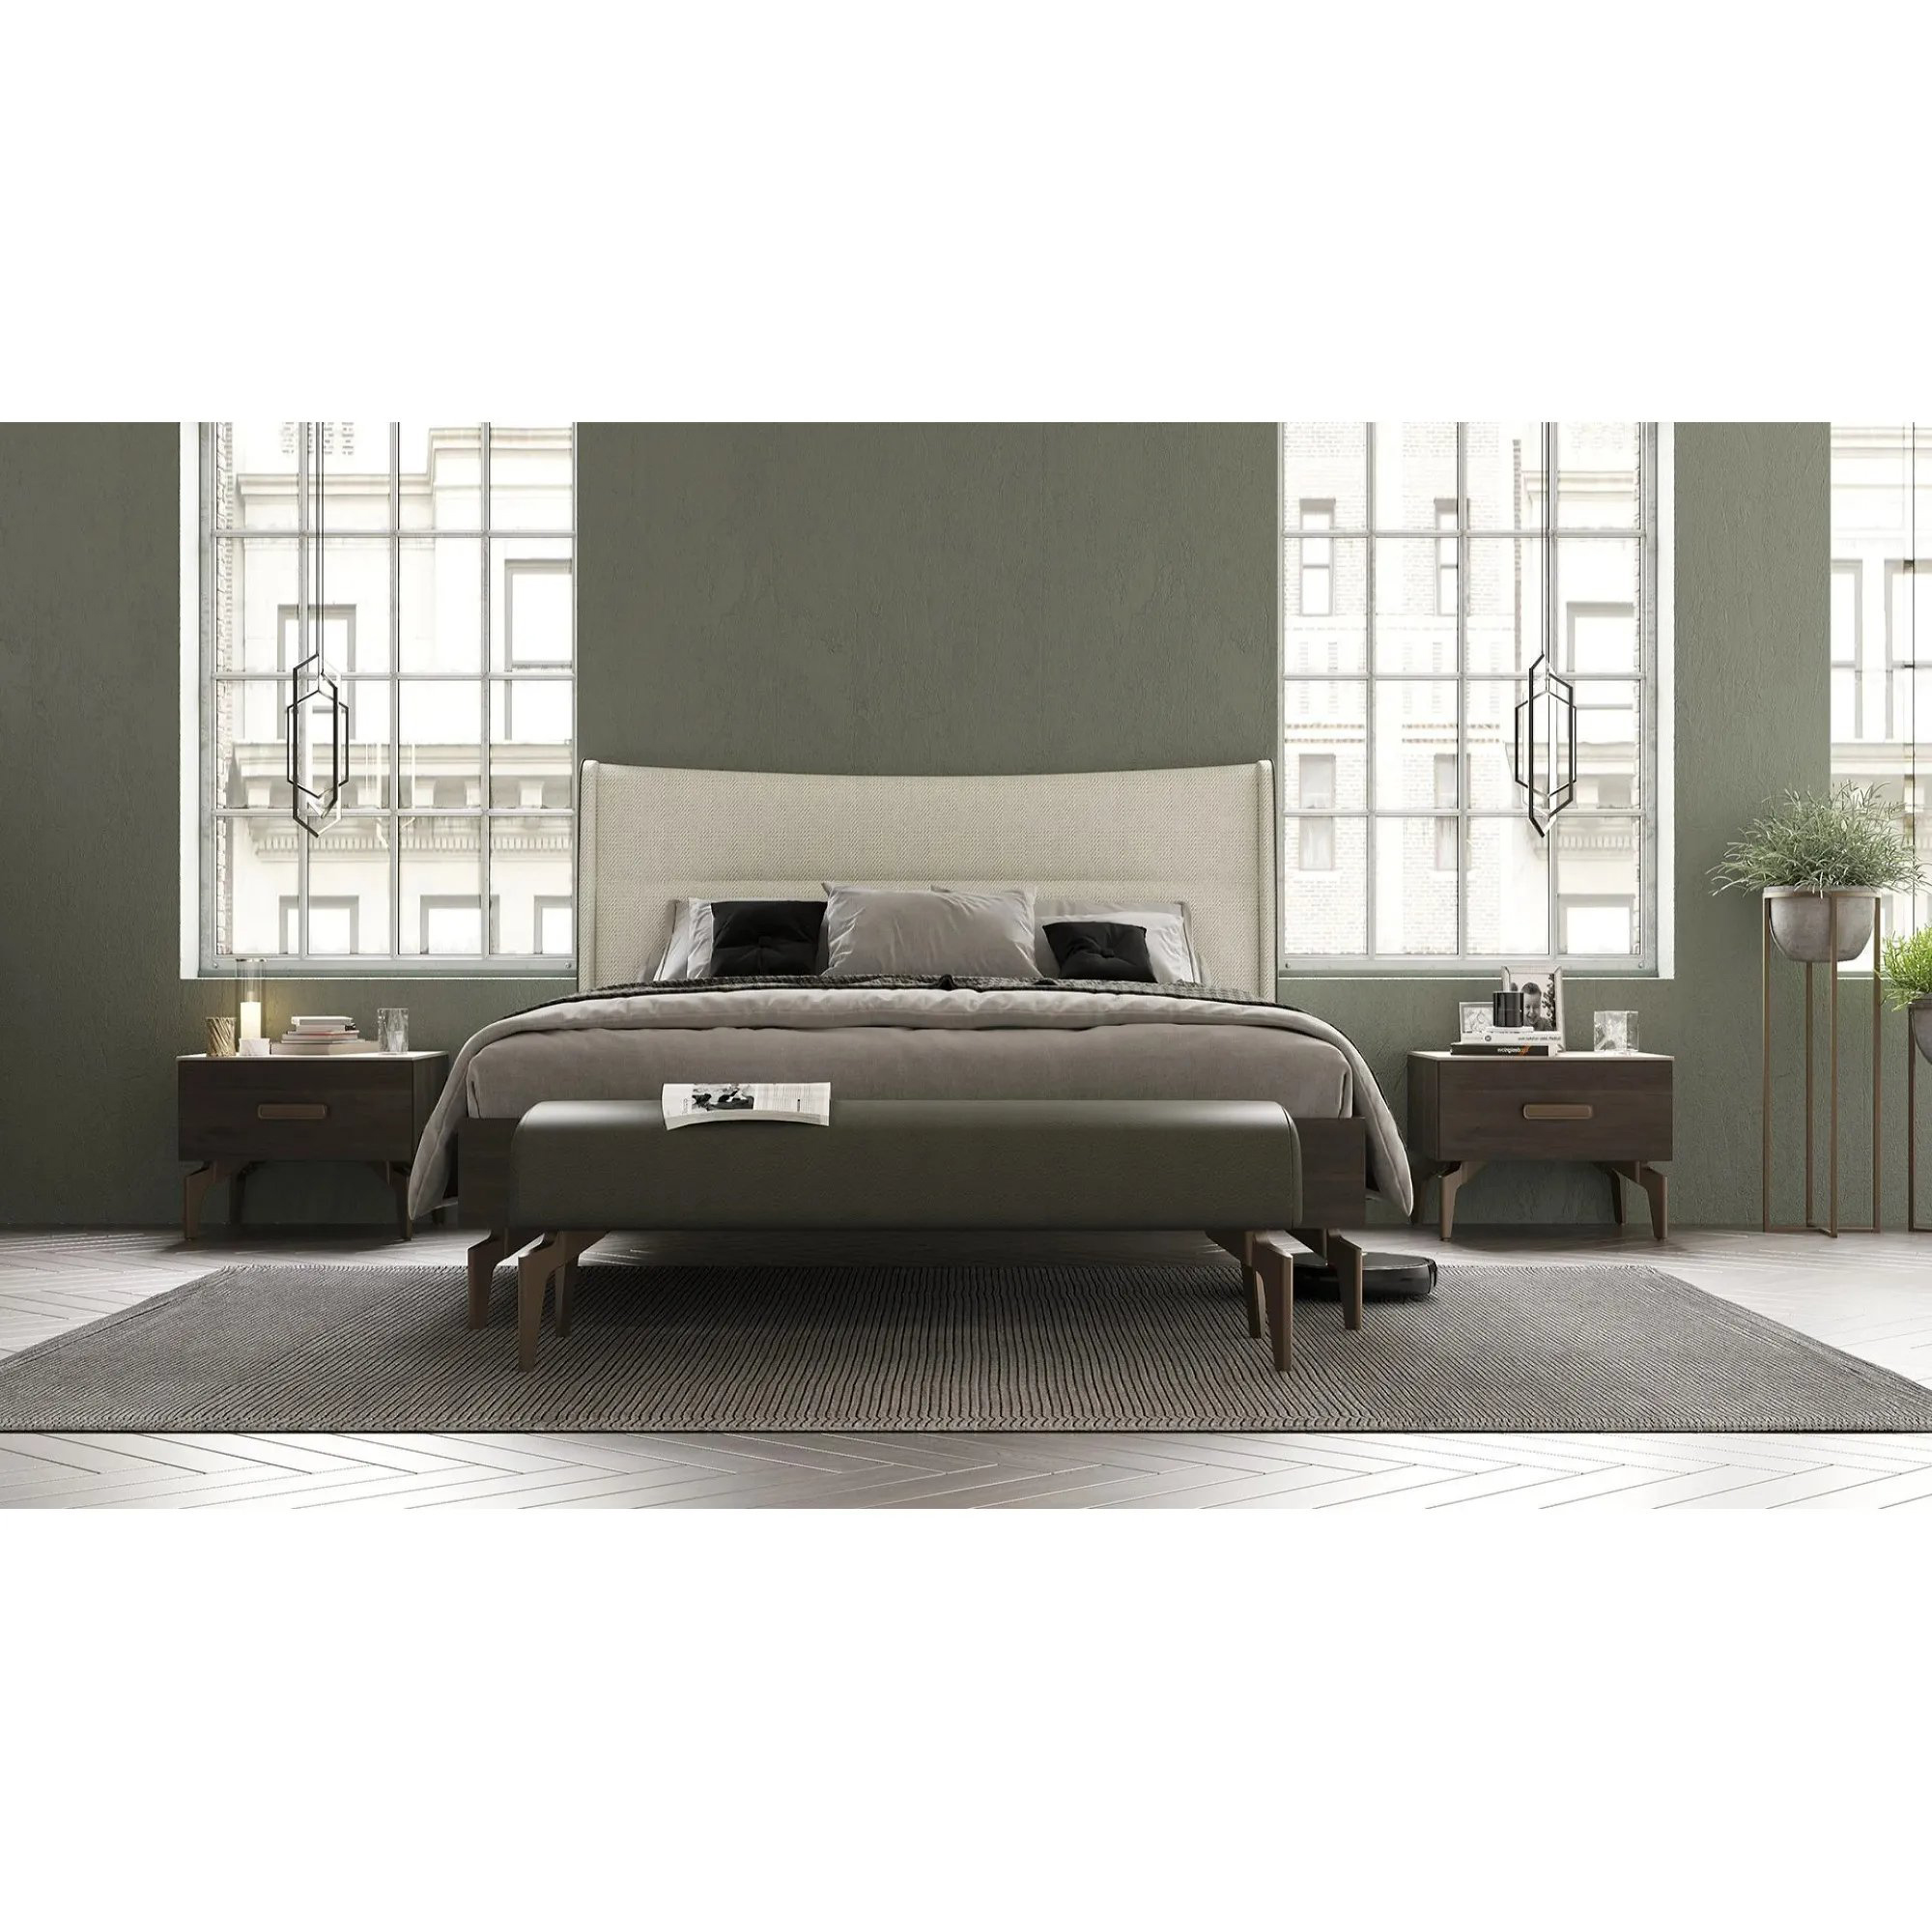 Кровать Dogtas Piero, двуспальная, 180х200, размер 208х212х122 см